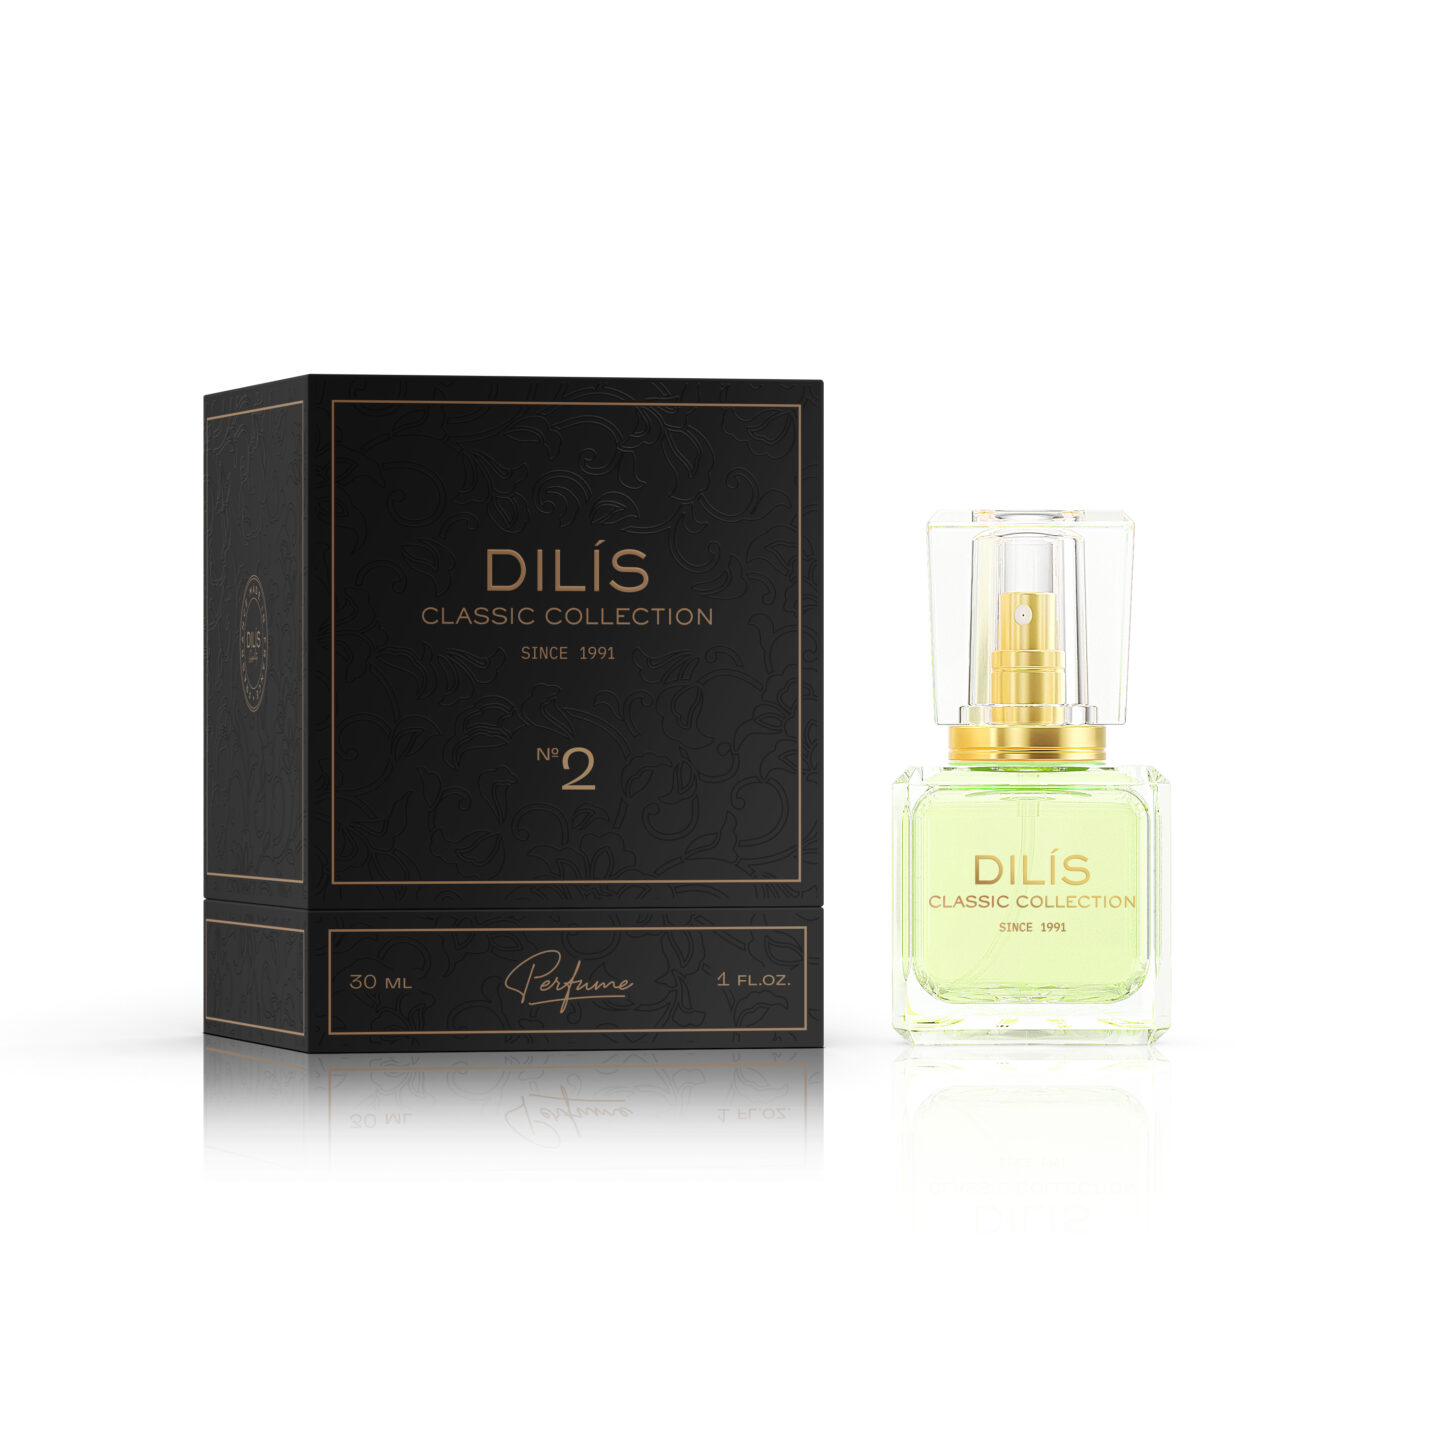 Духи женская Dilis Parfum Extra Classic №2 30 мл voyage d hermes parfum духи 100мл